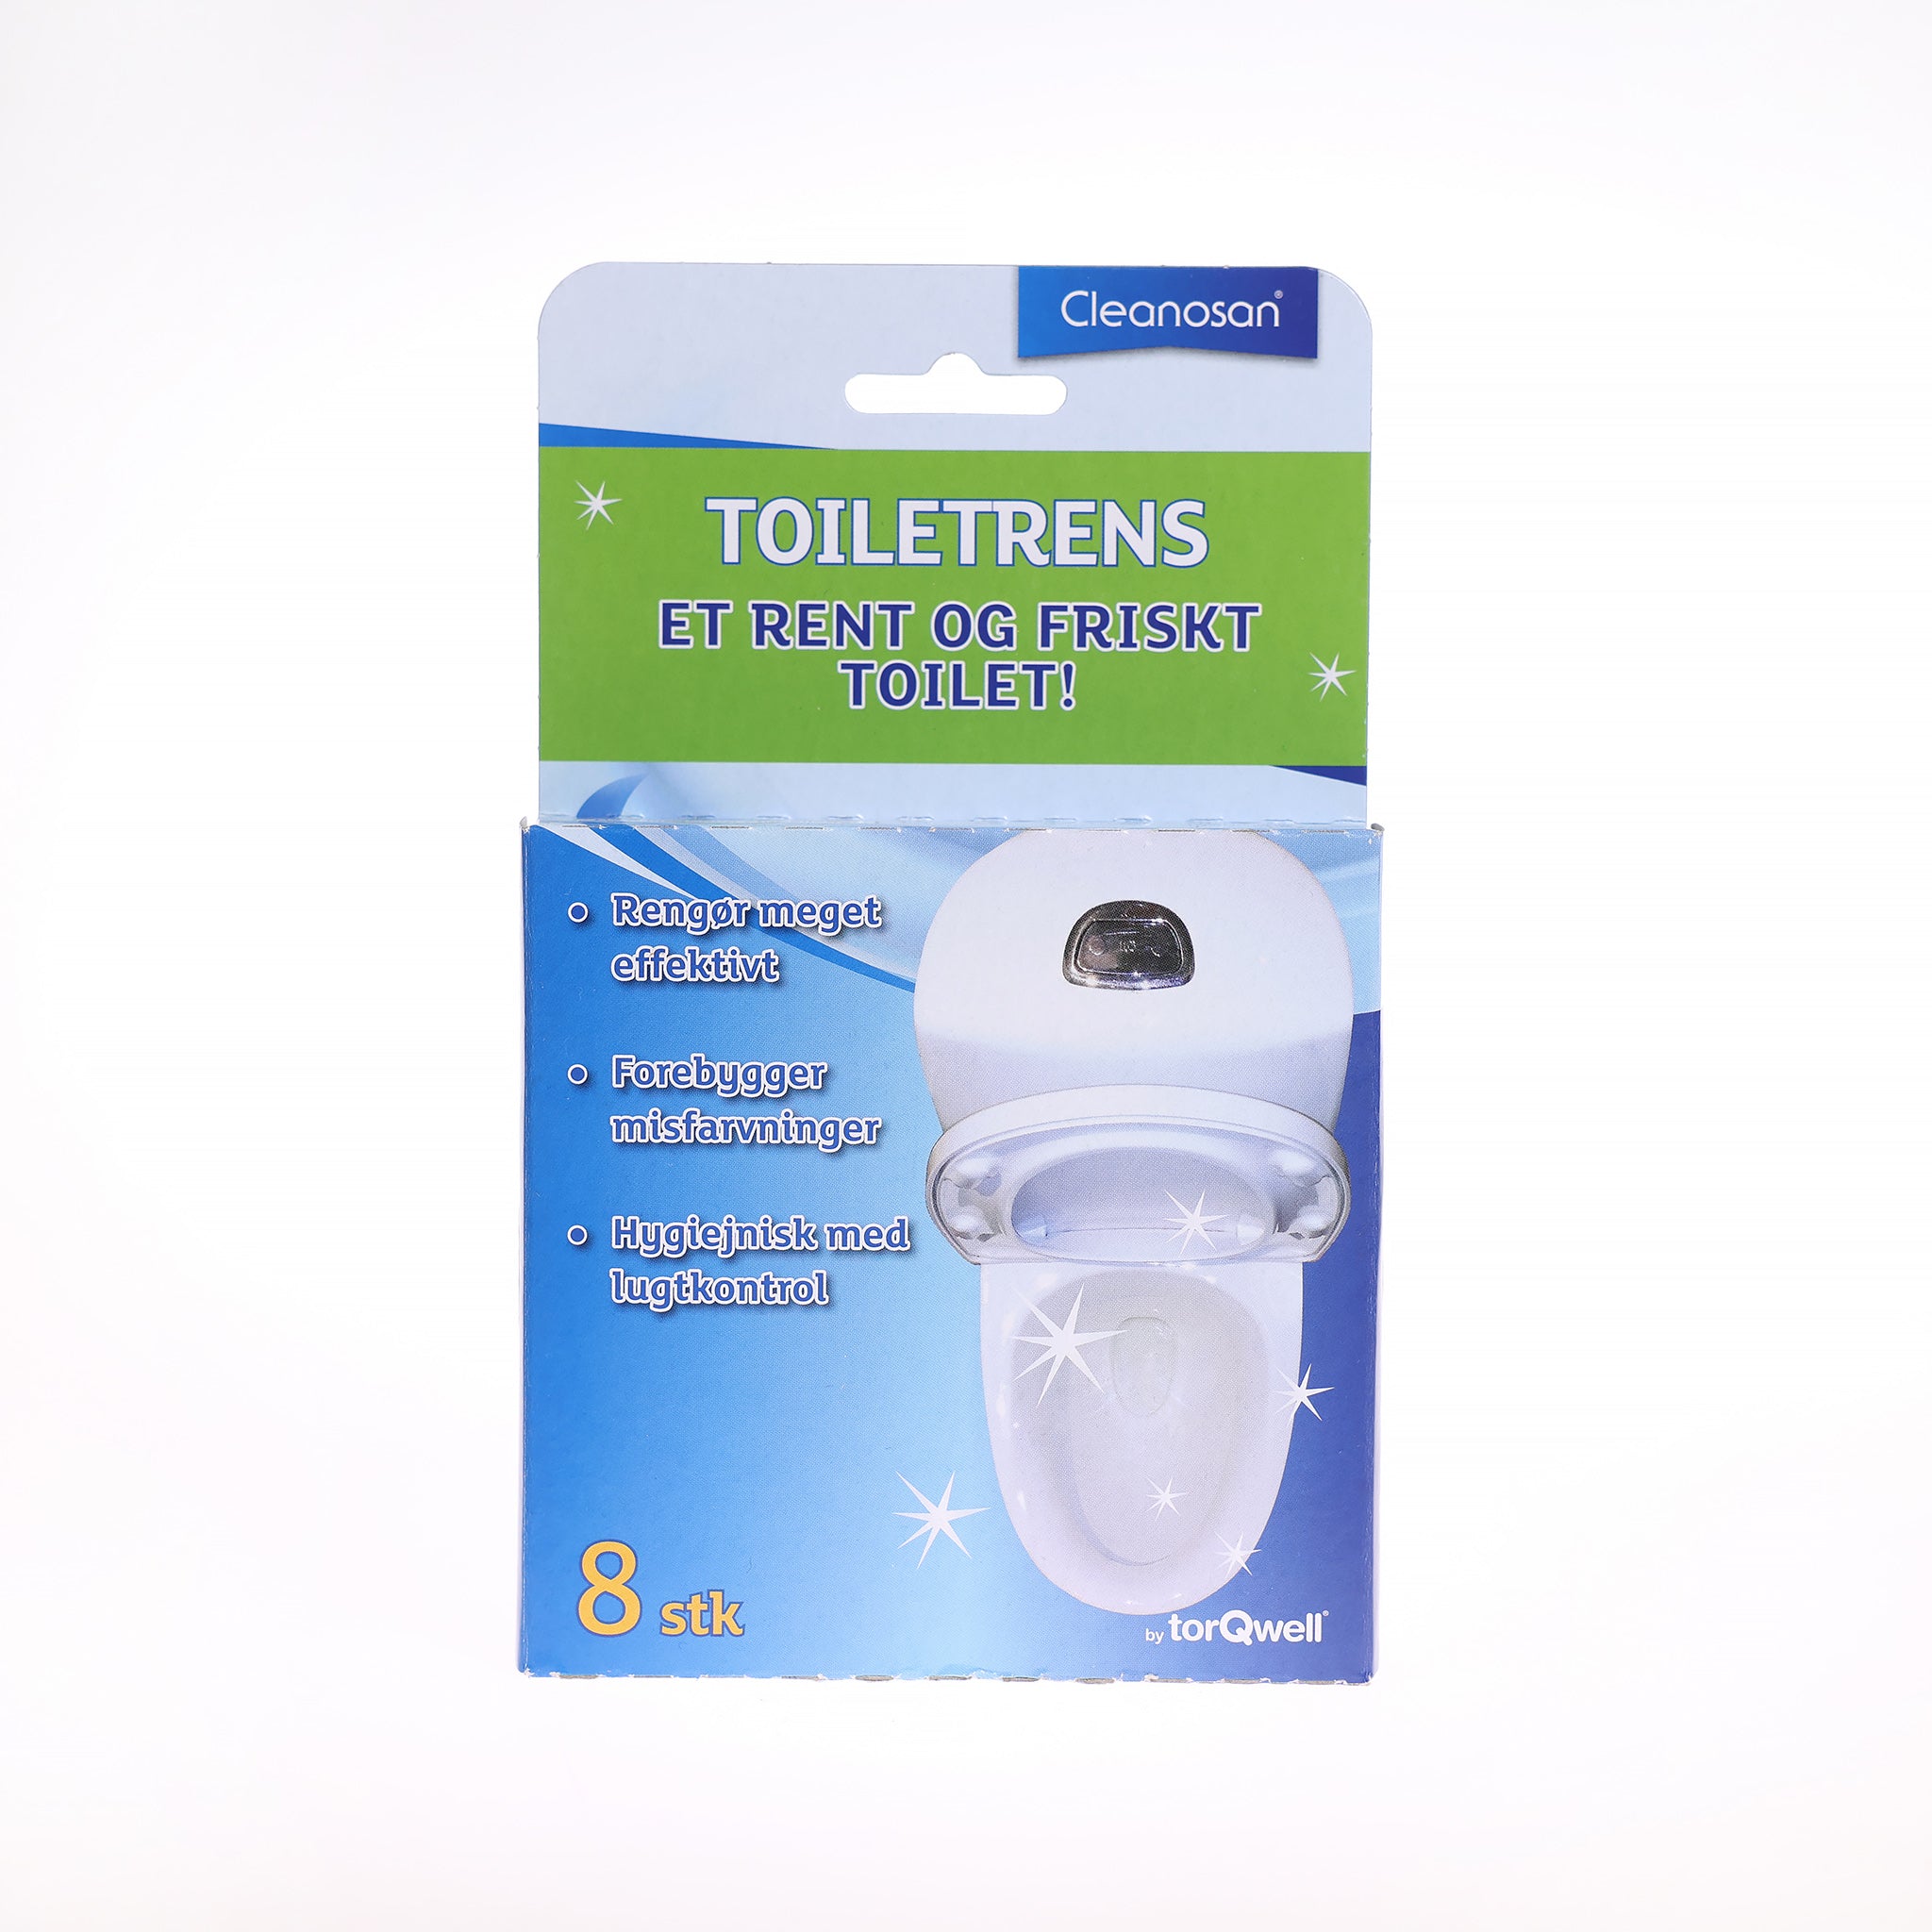 Slip for lugtgener fra dit toilet med afkalkningstabs fra Cleanosan. Afkalkningstabsene desinficerer og afkalker toilettet.